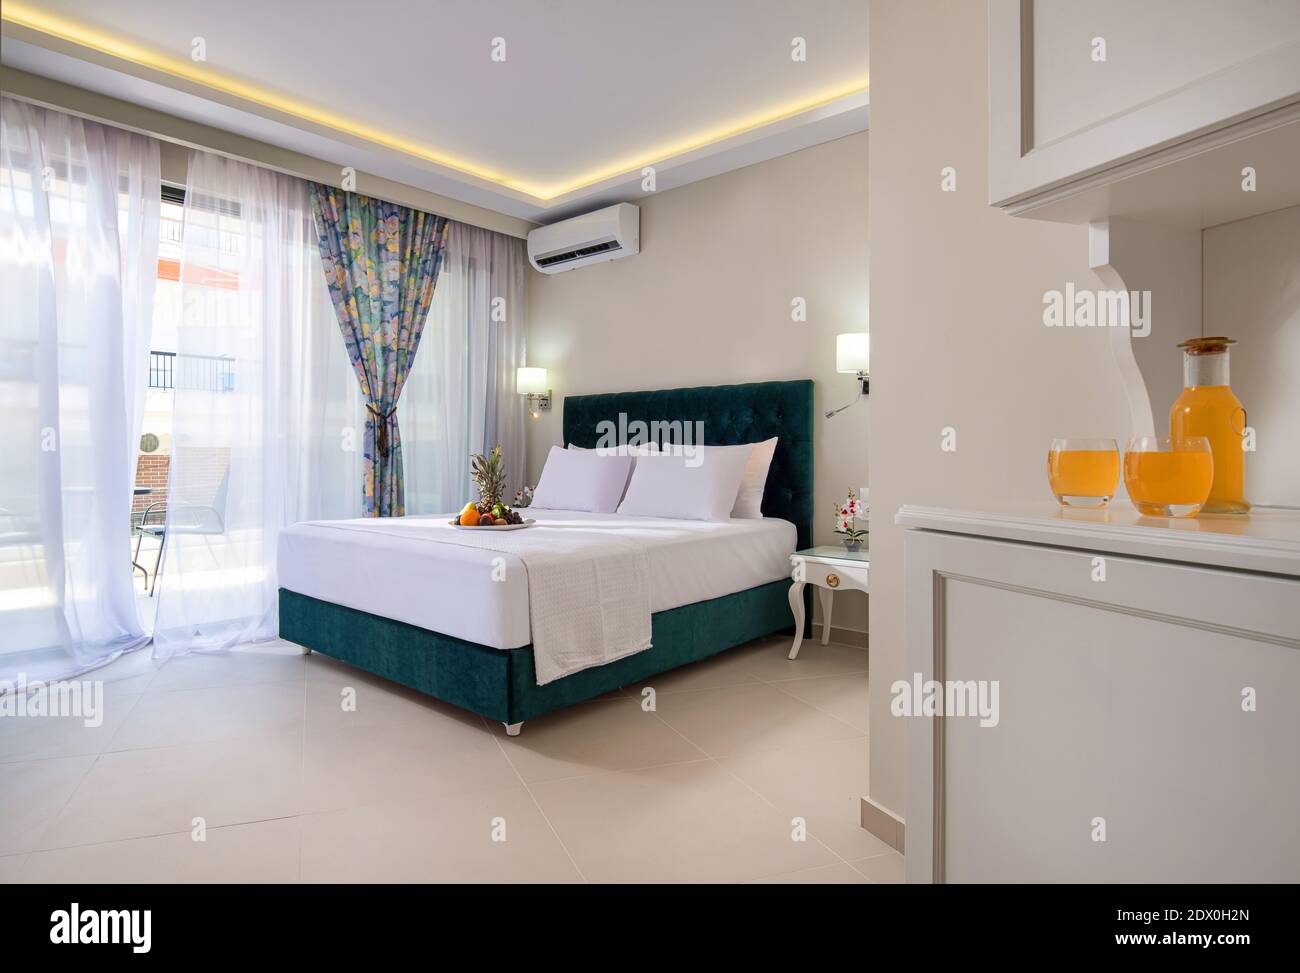 Elegante e moderno interno della camera da letto nell'appartamento dell'hotel a doppio suit con morbido letto in tessuto color acquamarina, mobili in stile classico bianco e fruttato di benvenuto Foto Stock